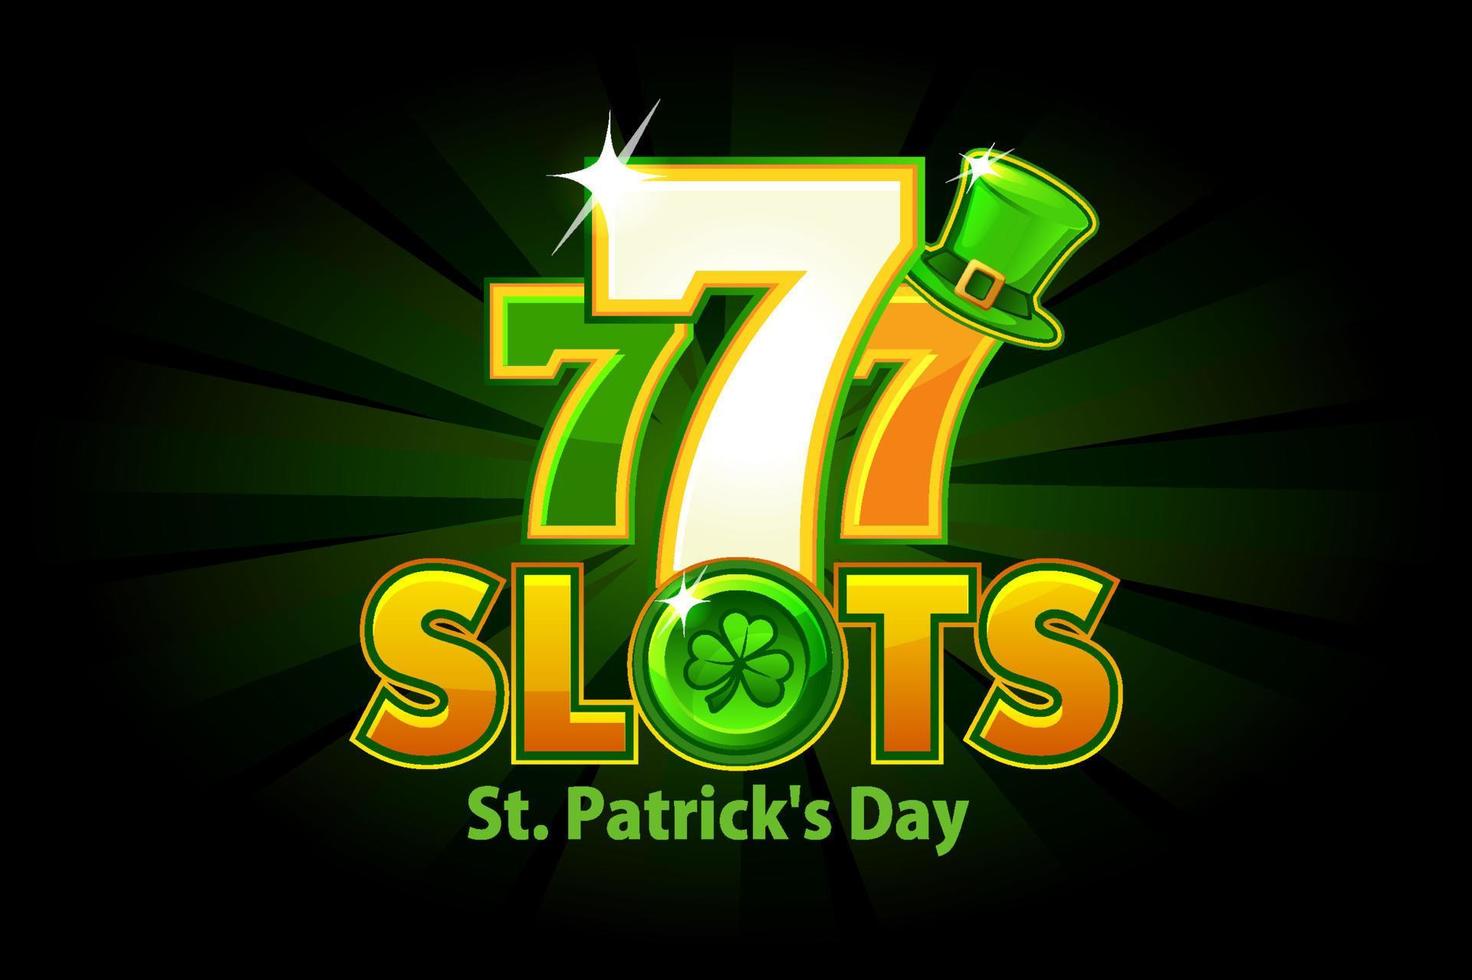 Casino-Slot 777 für st. Patricks Day auf grünem Hintergrund. logo-steckplatz und feiertag mit klee- und hutsymbol. vektor